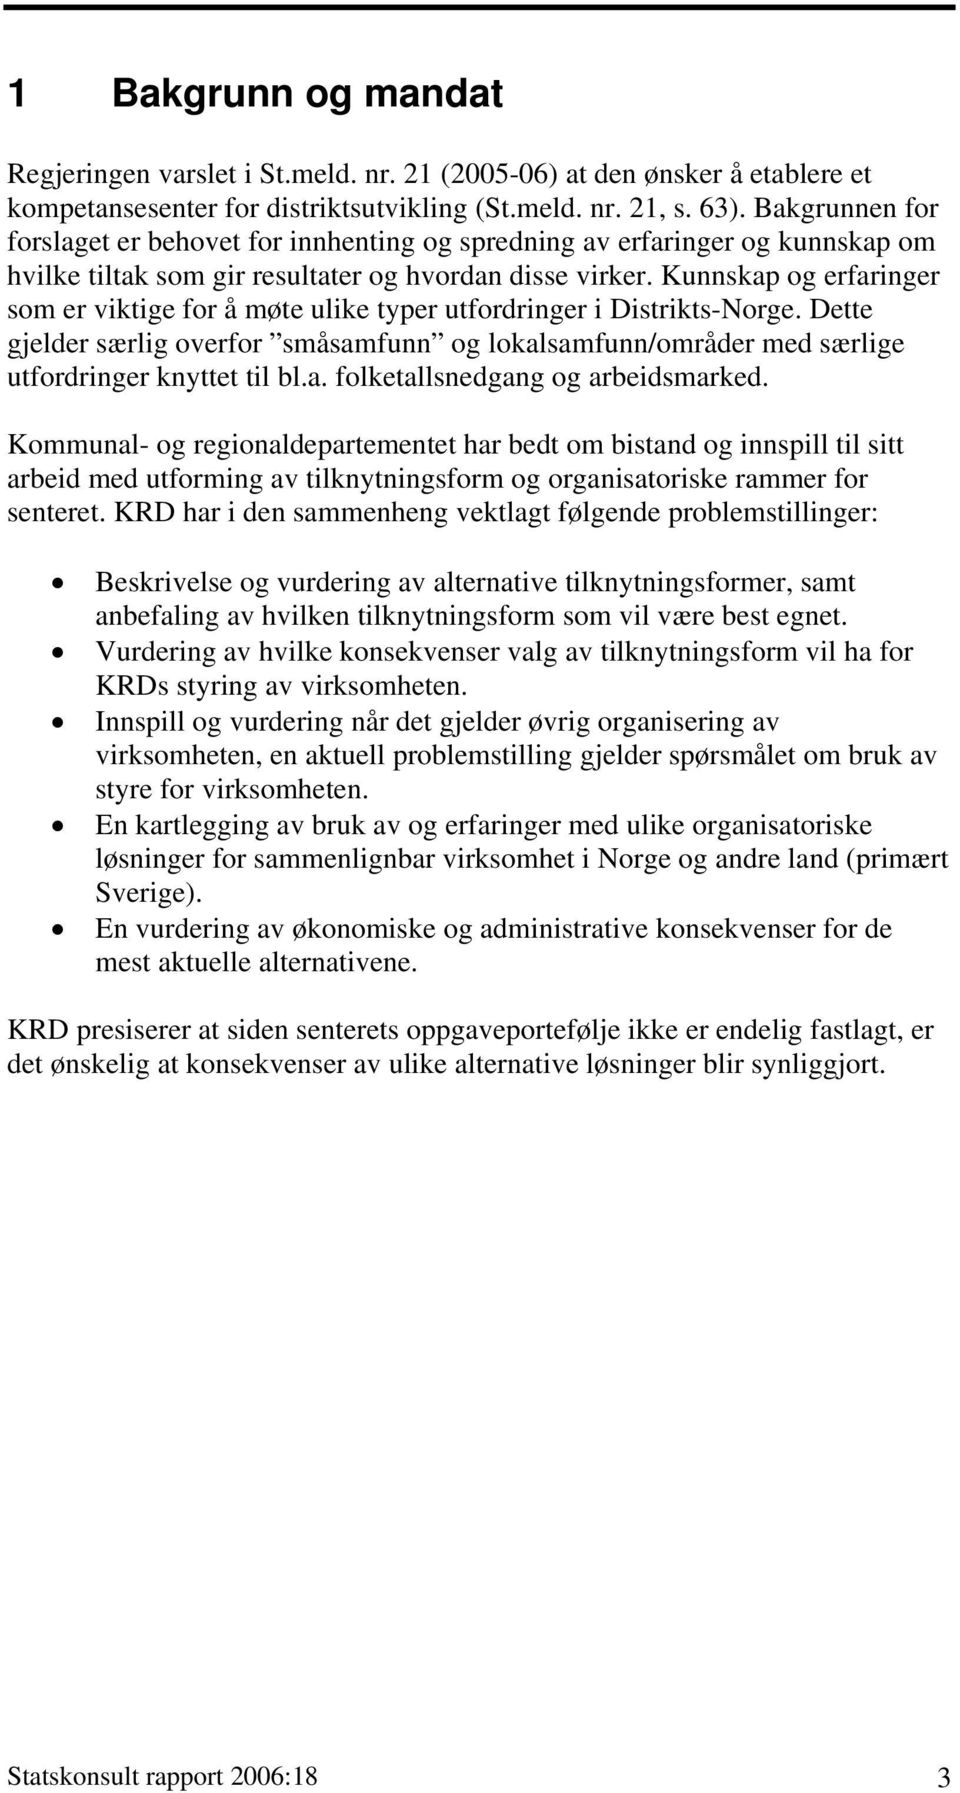 Kunnskap og erfaringer som er viktige for å møte ulike typer utfordringer i Distrikts-Norge. Dette gjelder særlig overfor småsamfunn og lokalsamfunn/områder med særlige utfordringer knyttet til bl.a. folketallsnedgang og arbeidsmarked.